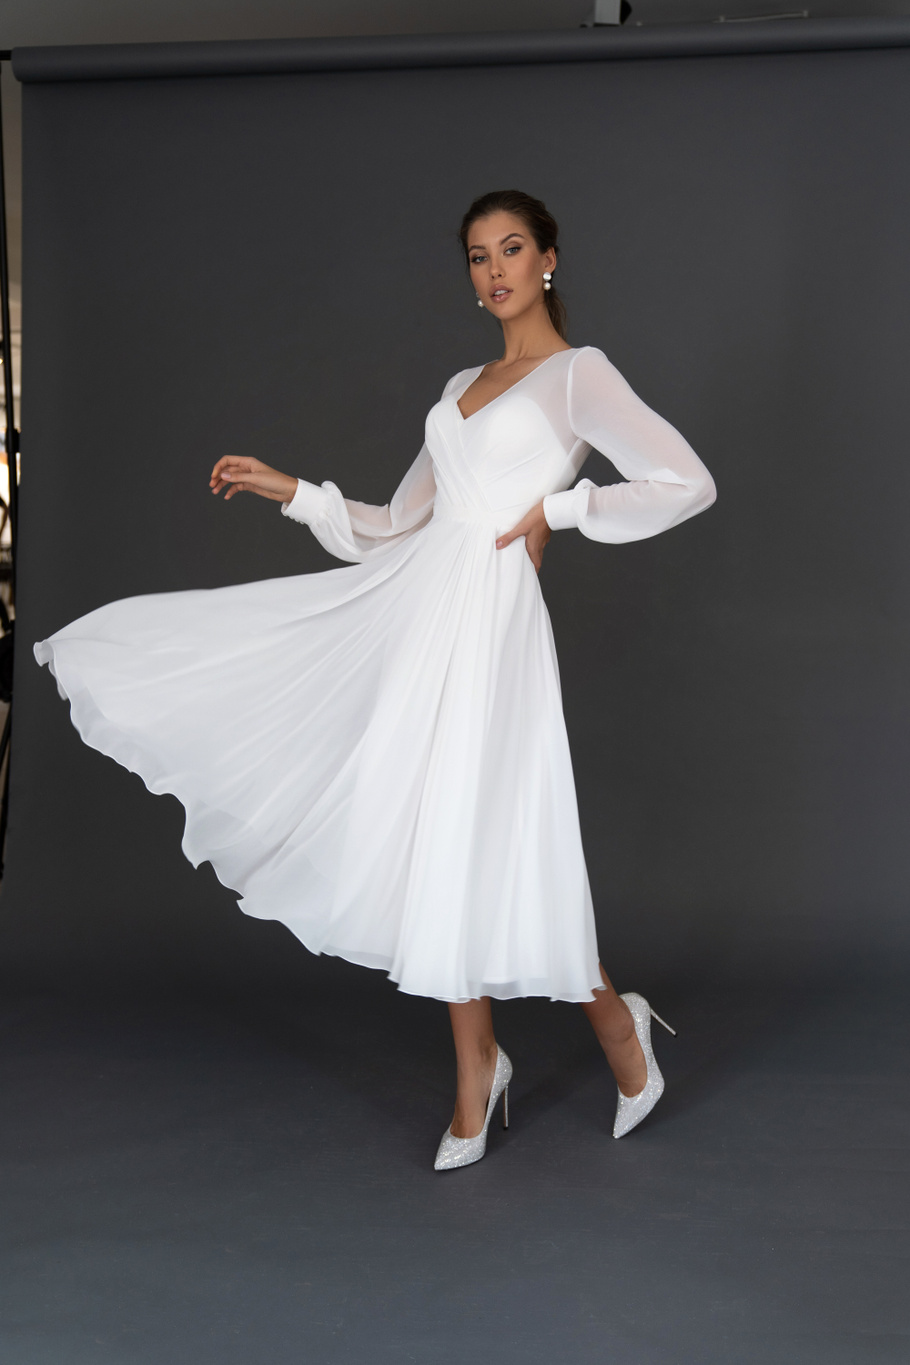 Свадебное платье «Осфадэль миди» Марта — купить в Волгограде платье Осфадэль из коллекции 2021 года